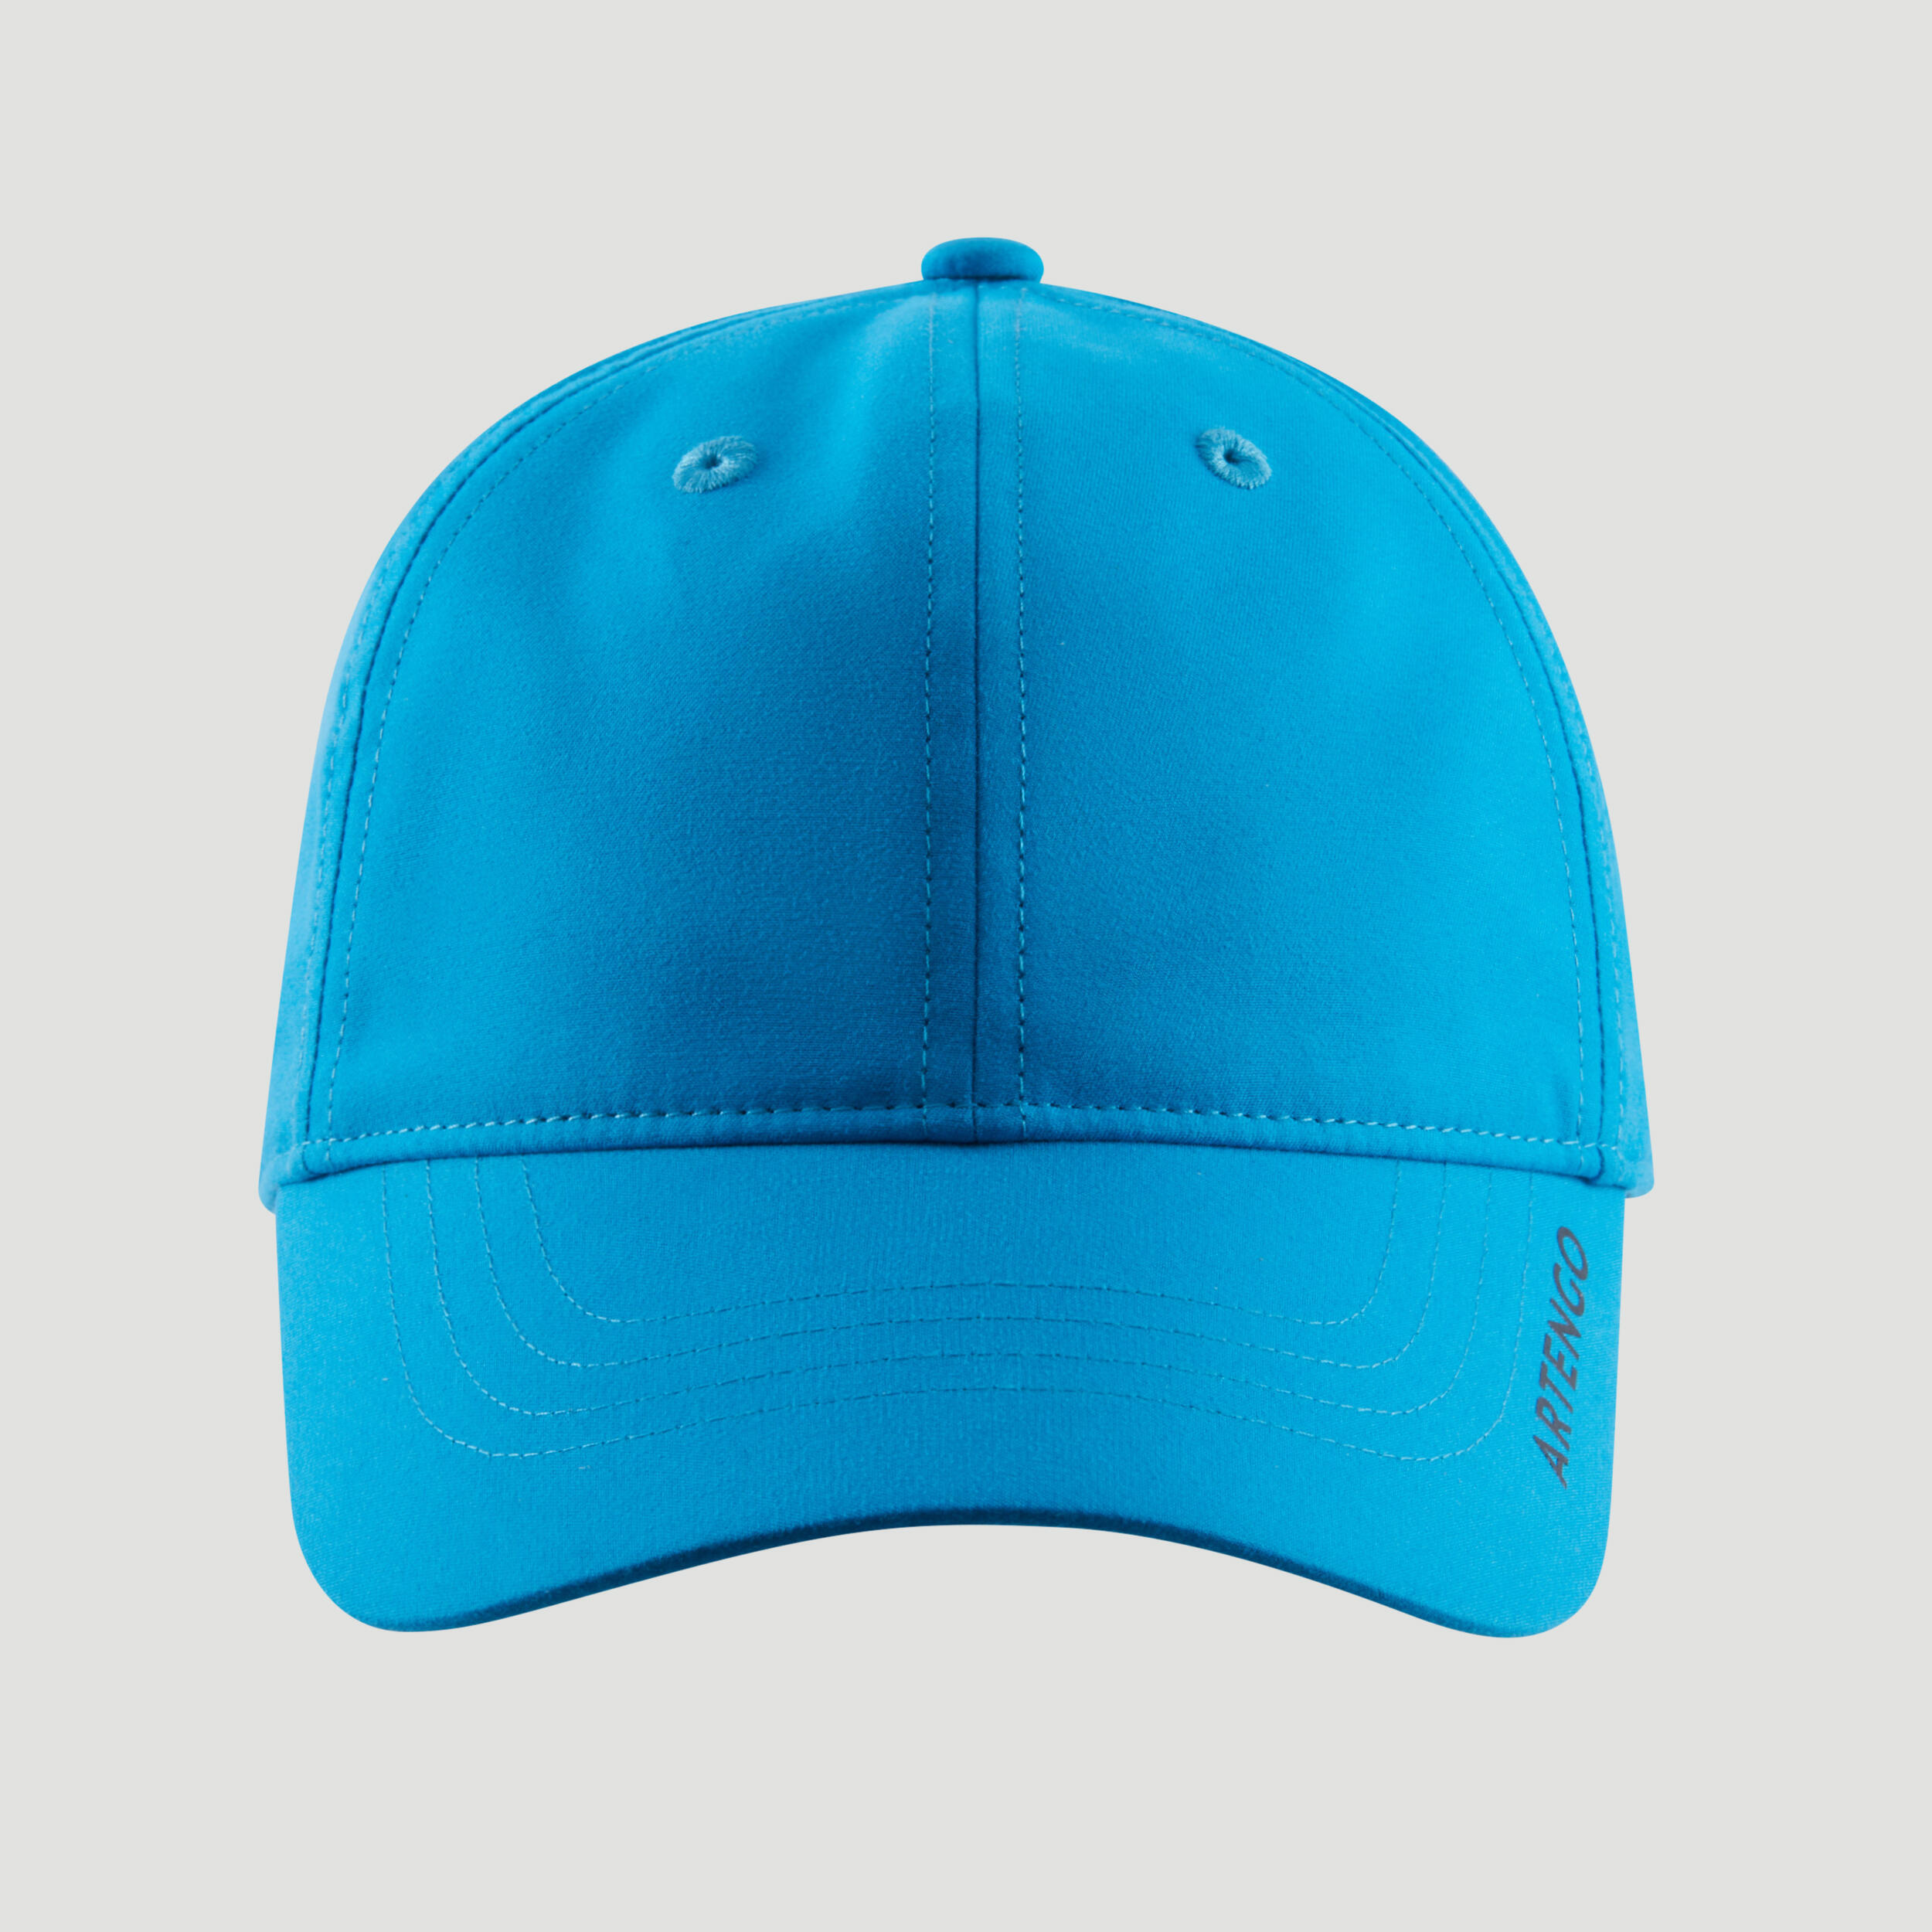 Tennis Cap TC 500 S54 - Turquoise/Blue 4/5